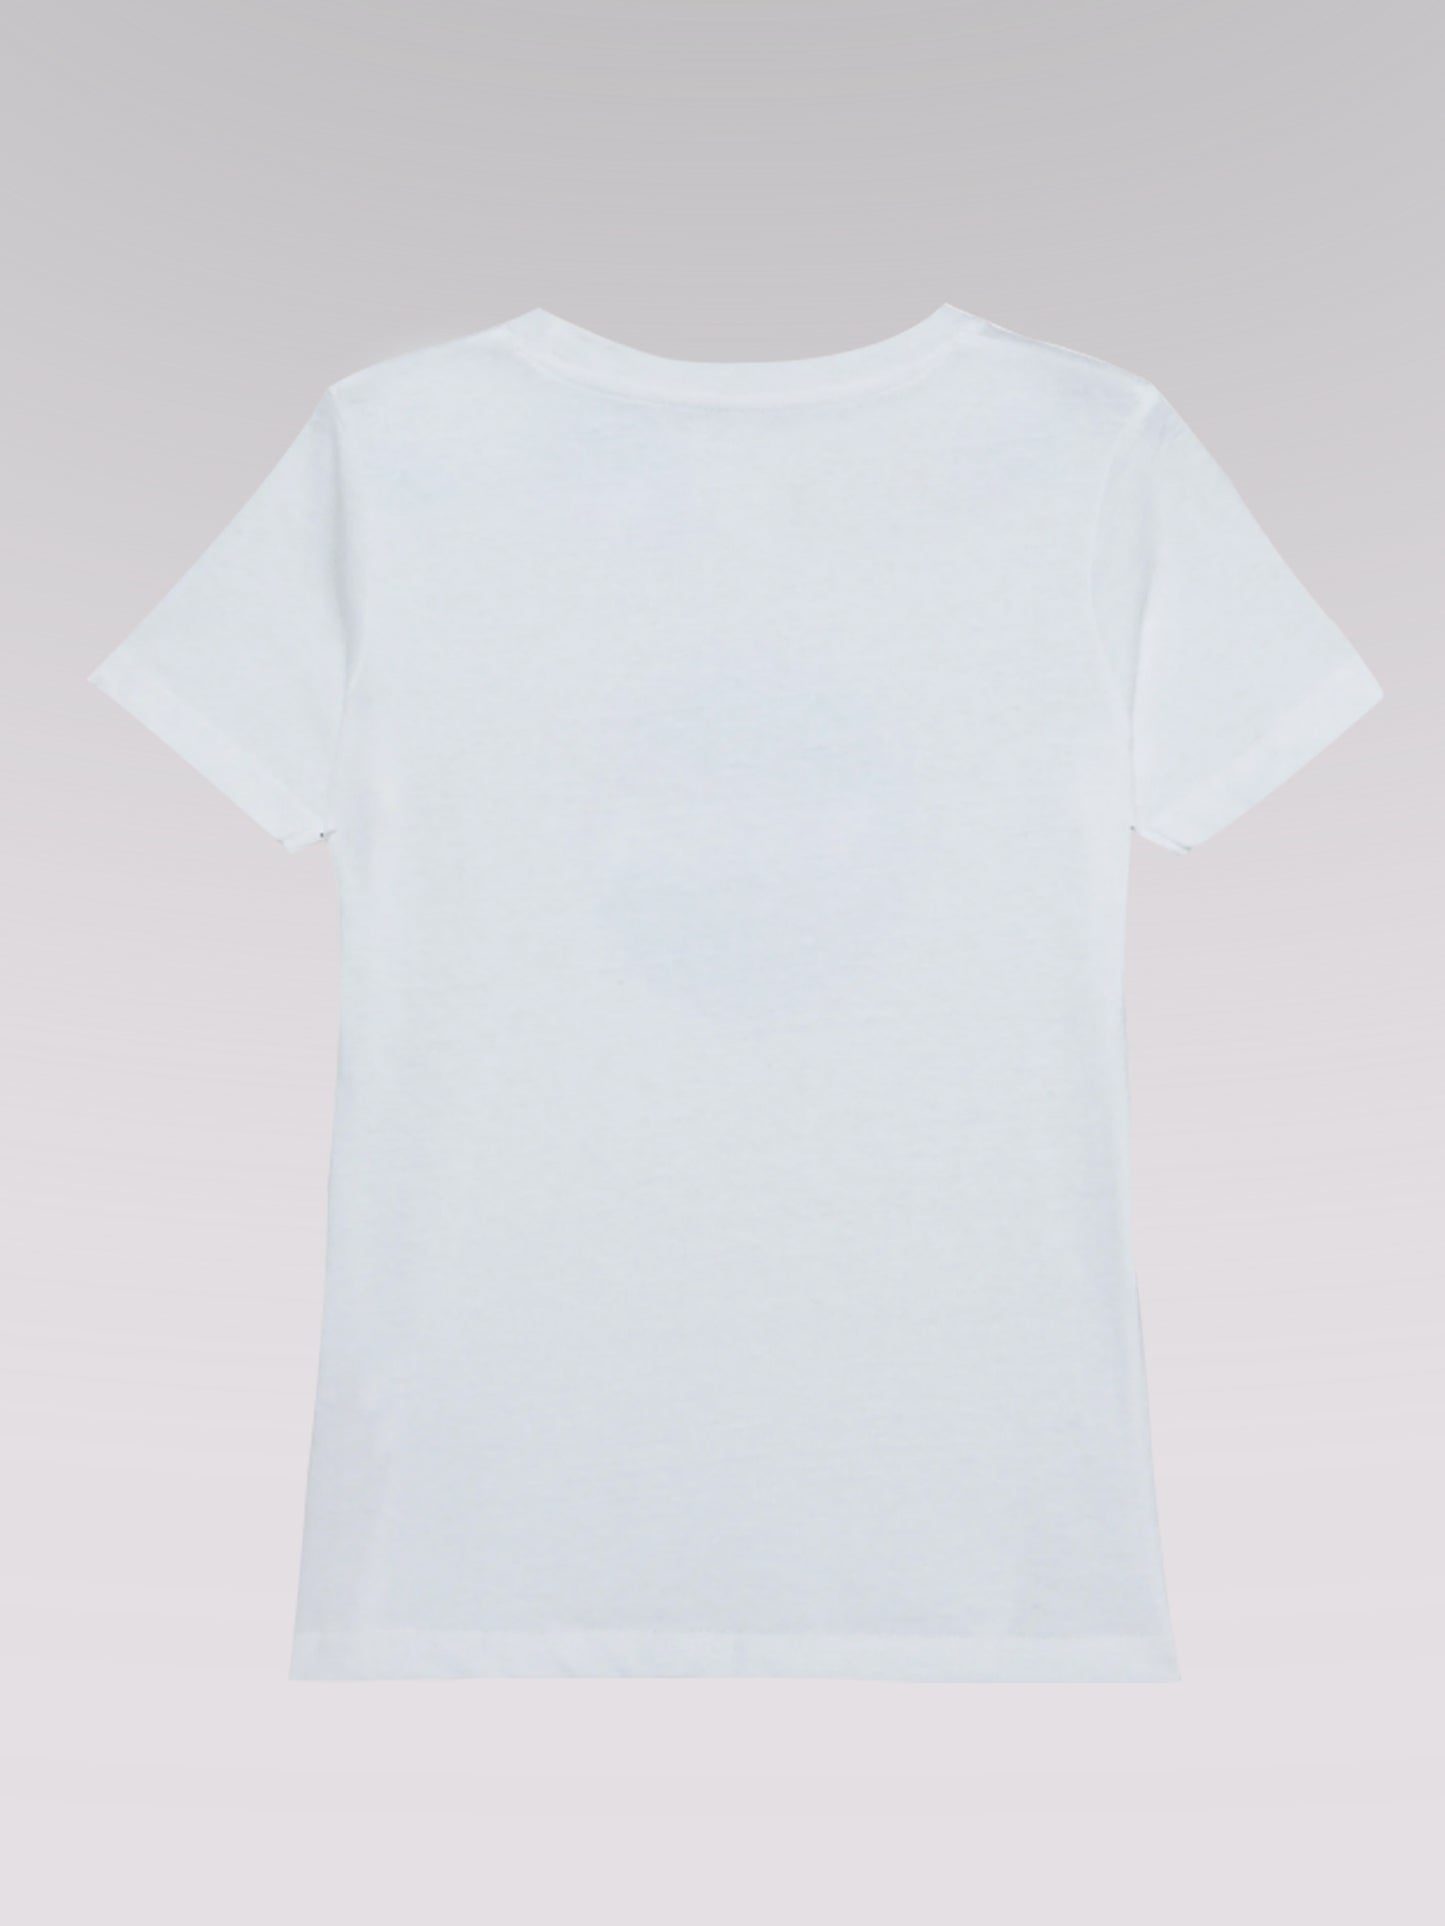 Kinder T-Shirt ZUKUNFT 02 (weiß)